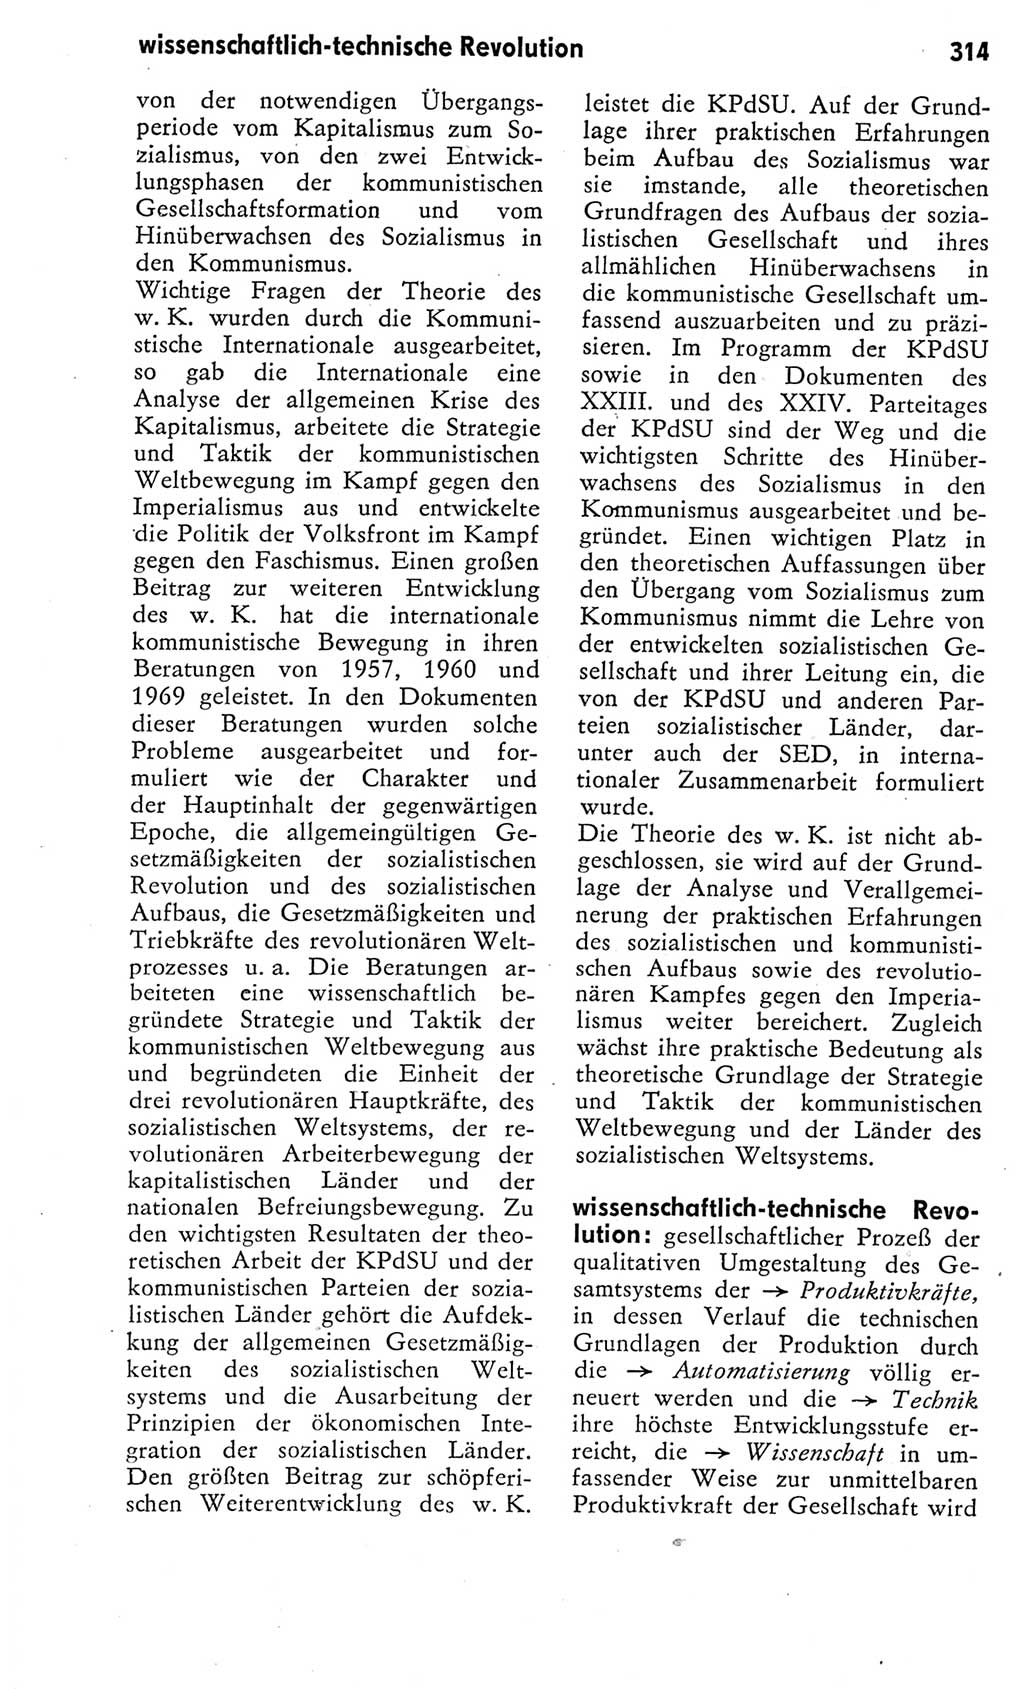 Kleines Wörterbuch der marxistisch-leninistischen Philosophie [Deutsche Demokratische Republik (DDR)] 1975, Seite 314 (Kl. Wb. ML Phil. DDR 1975, S. 314)